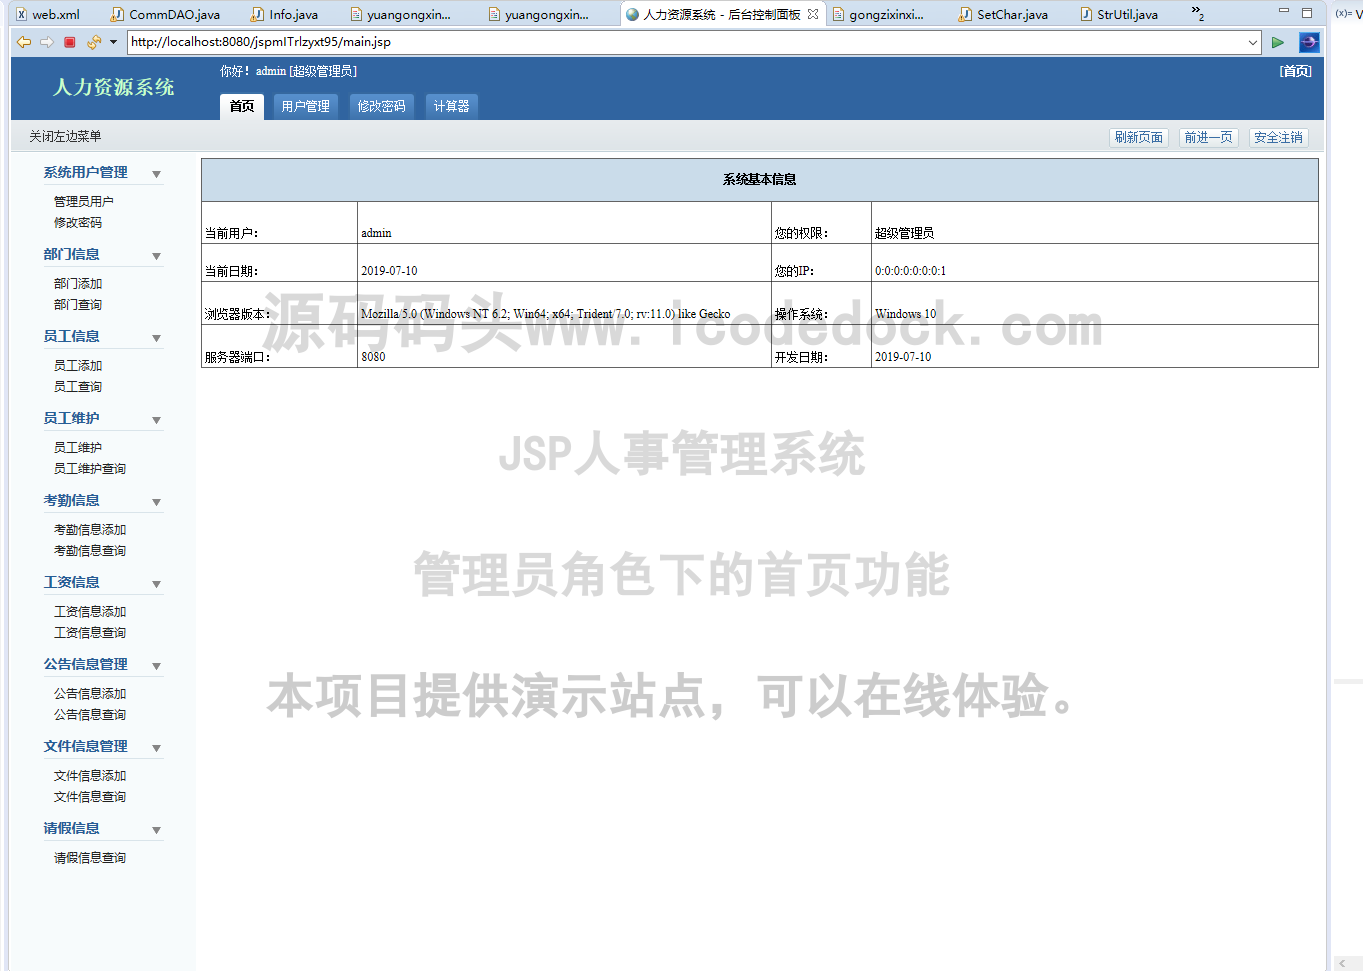 源码码头-JSP人事管理系统-管理员角色-首页